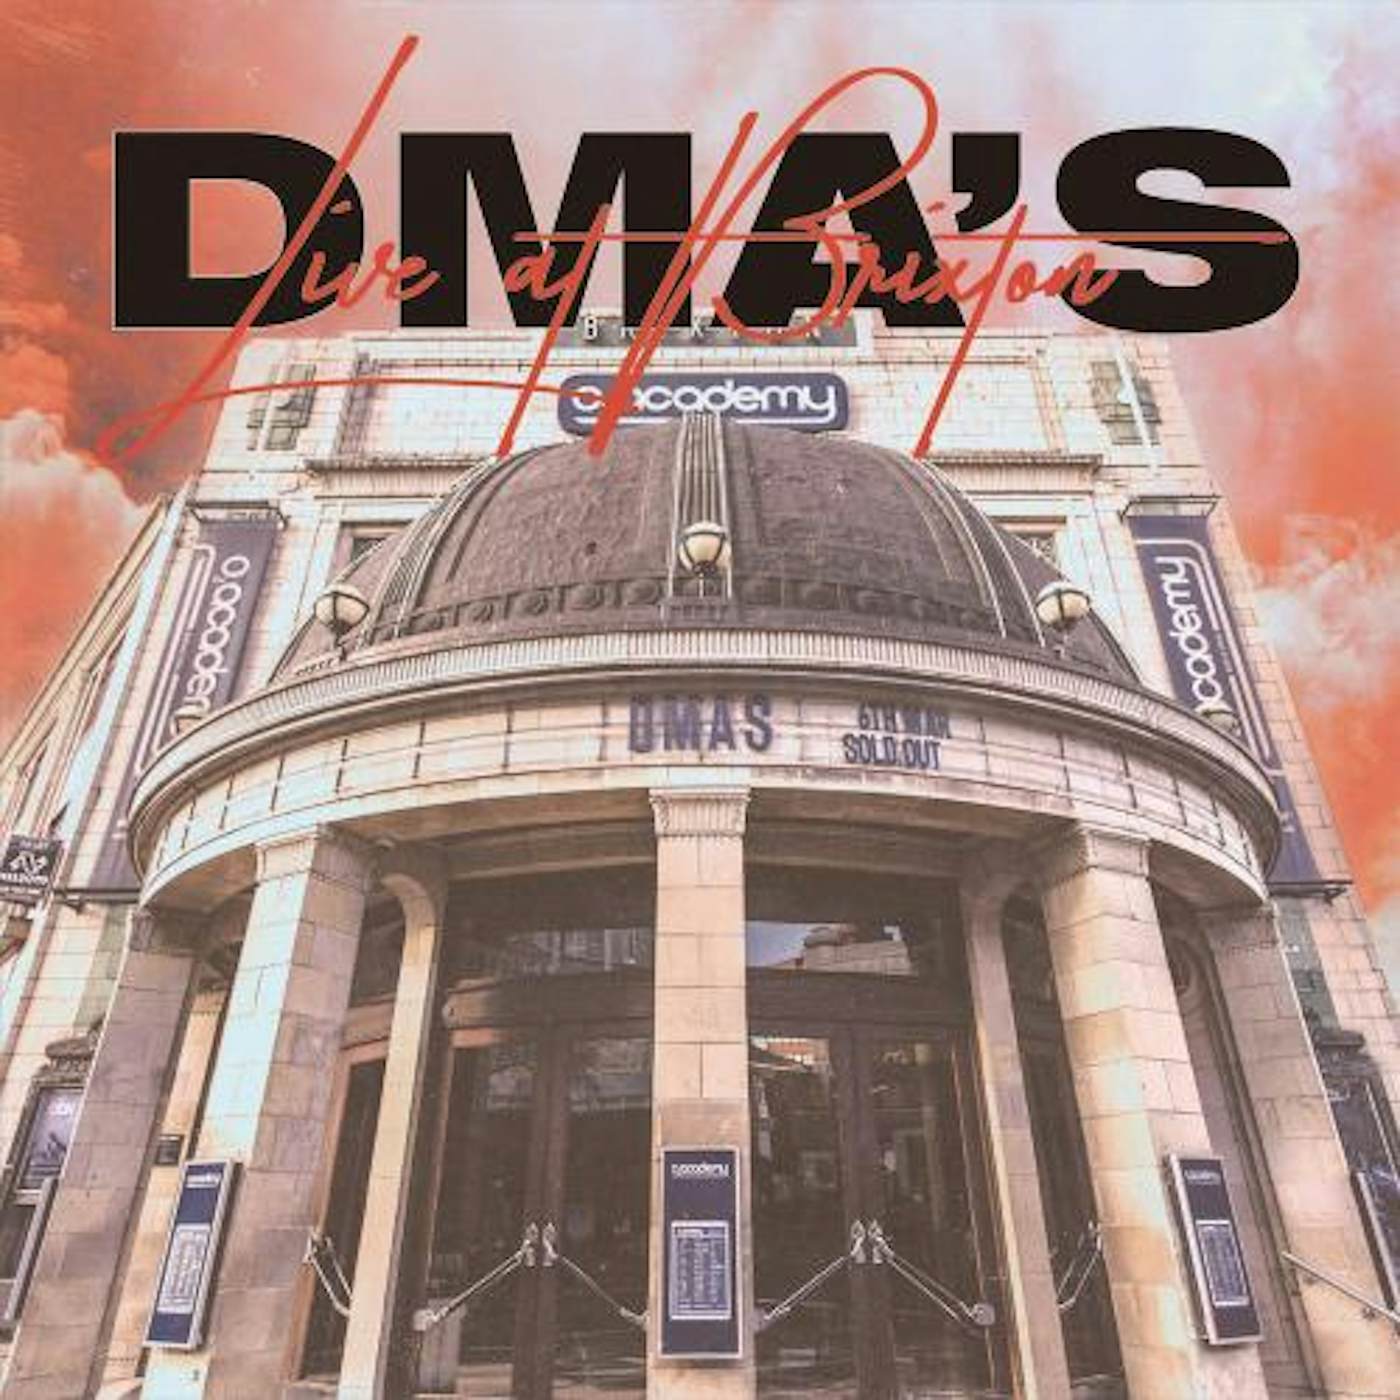 DMA'S Live at Brixton Vinyl Record